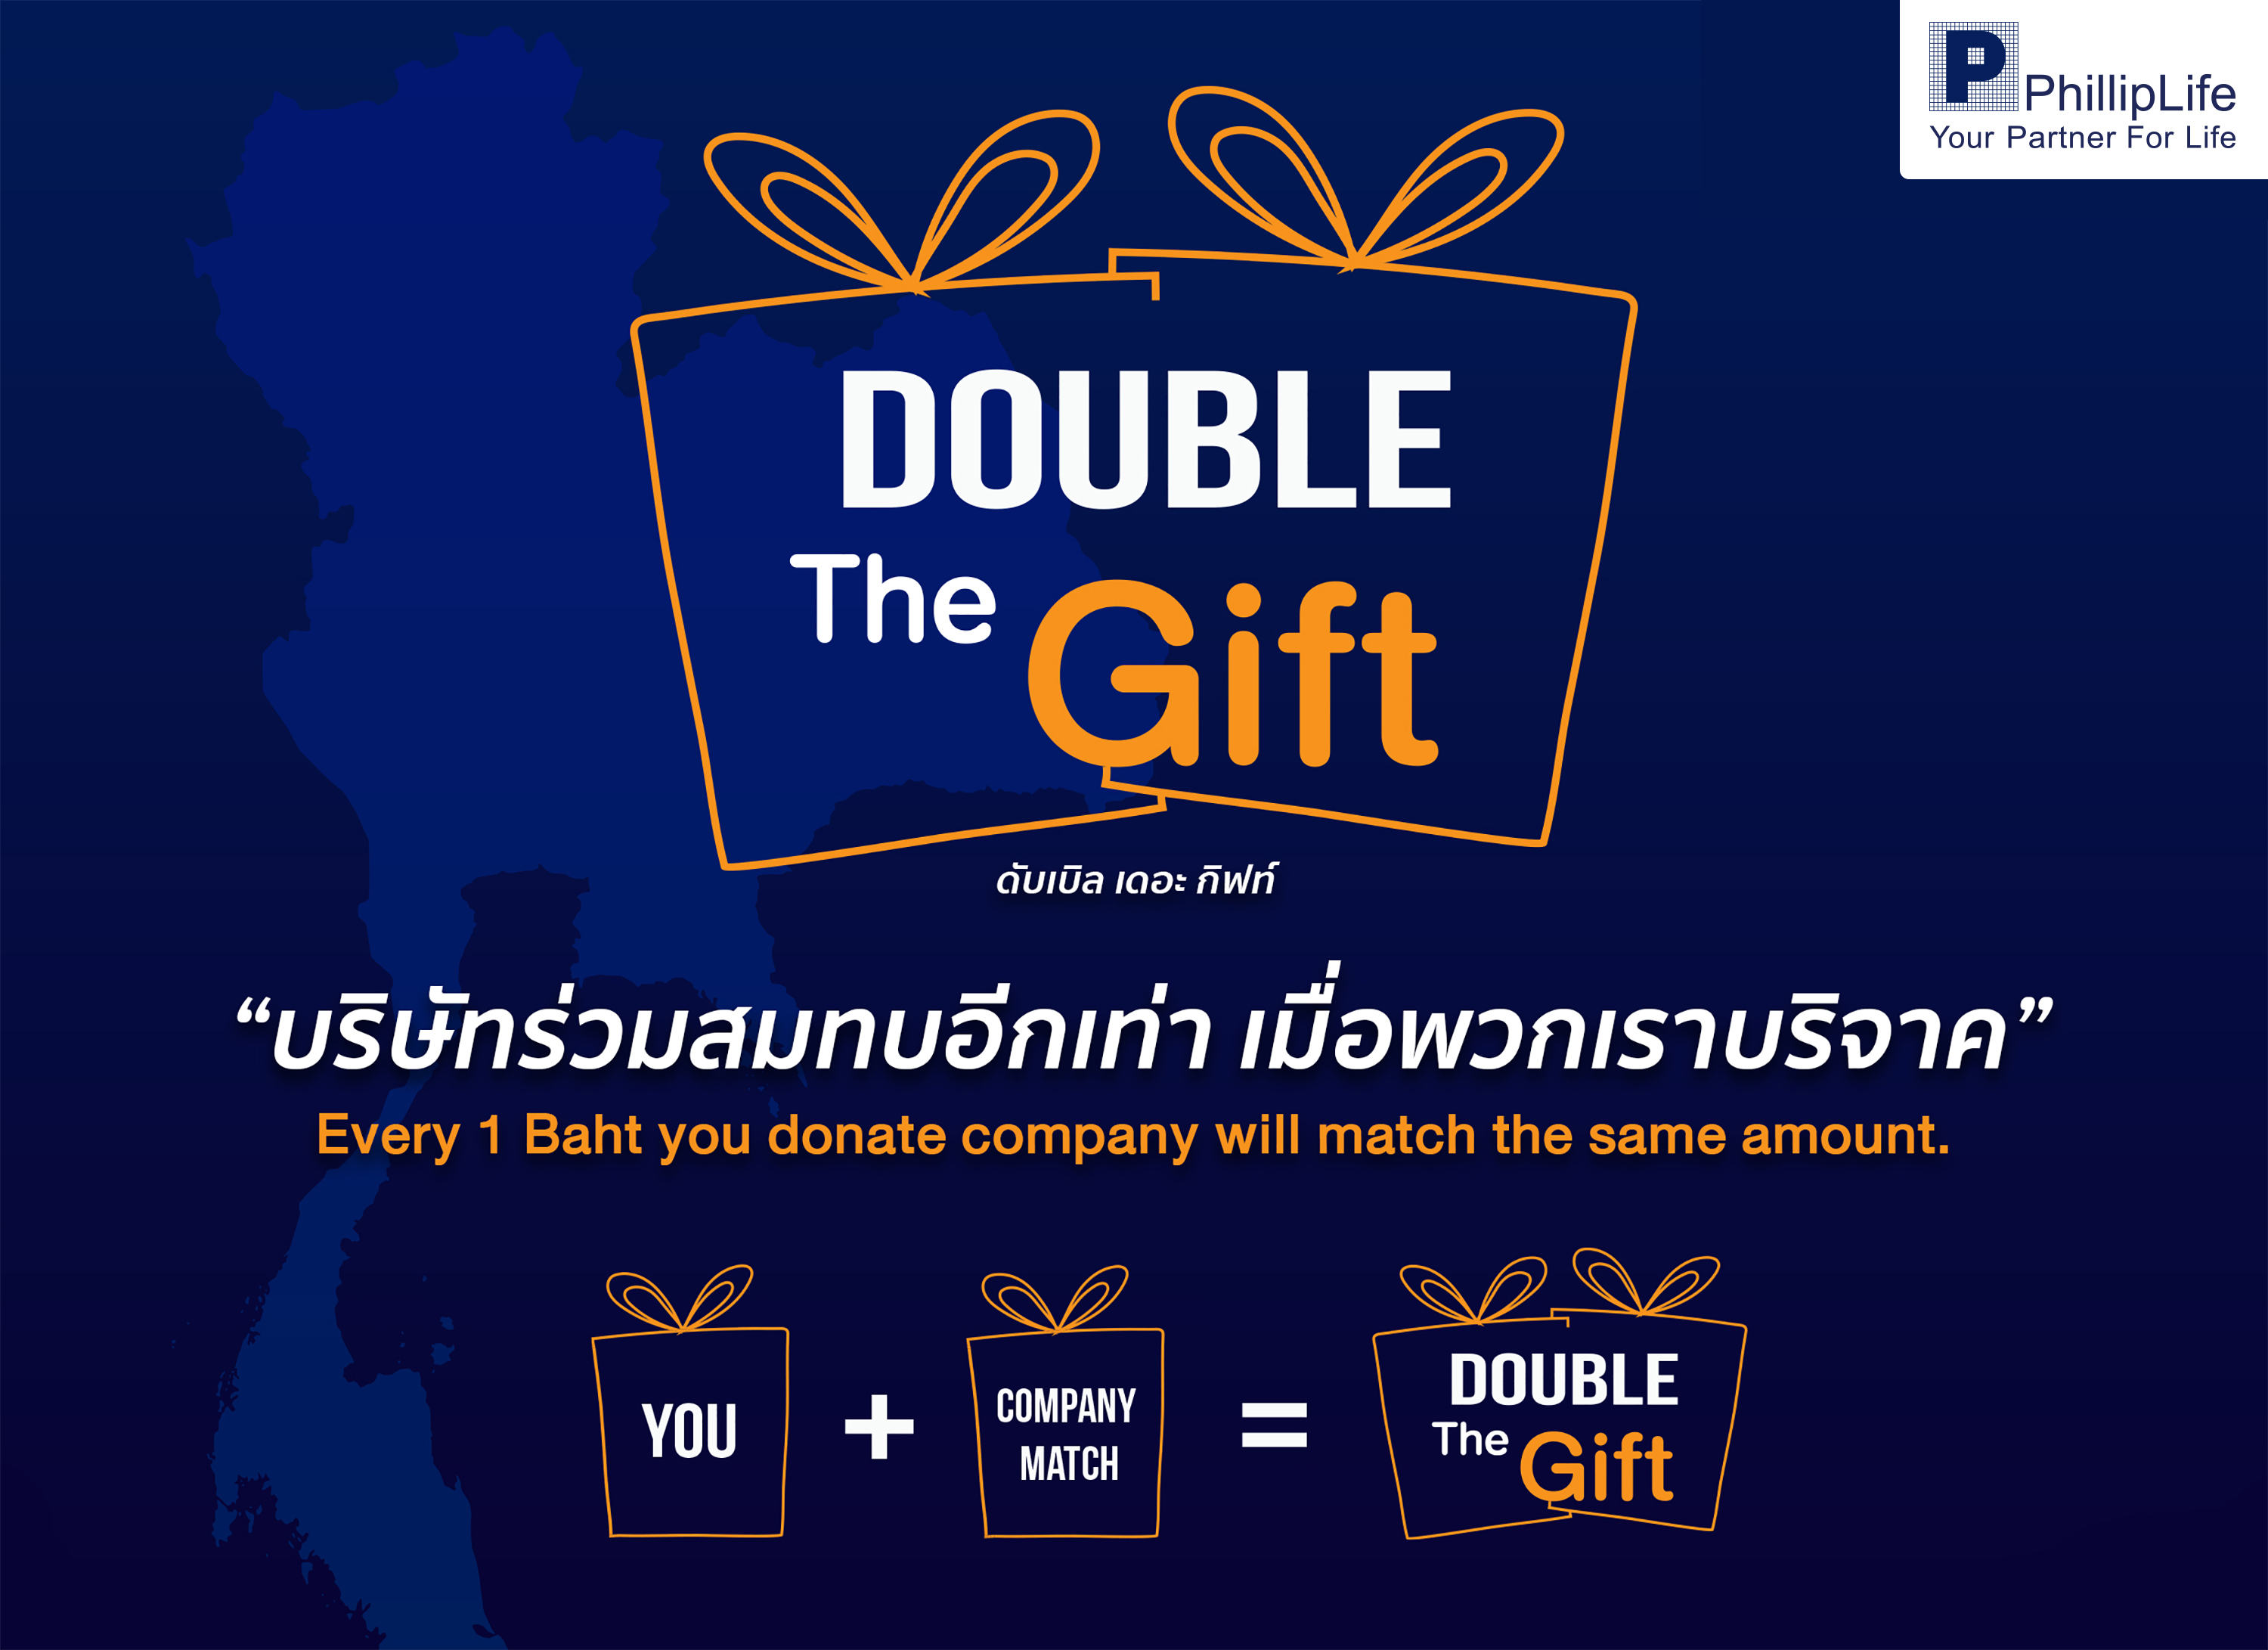 ฟิลลิปประกันชีวิต จัดกิจกรรม “Double The Gift” ชวนพนักงานและตัวแทนฝ่ายขาย ร่วมบริจาคเงินให้กับโรงพยาบาลจุฬาลงกรณ์ สภากาชาดไทย